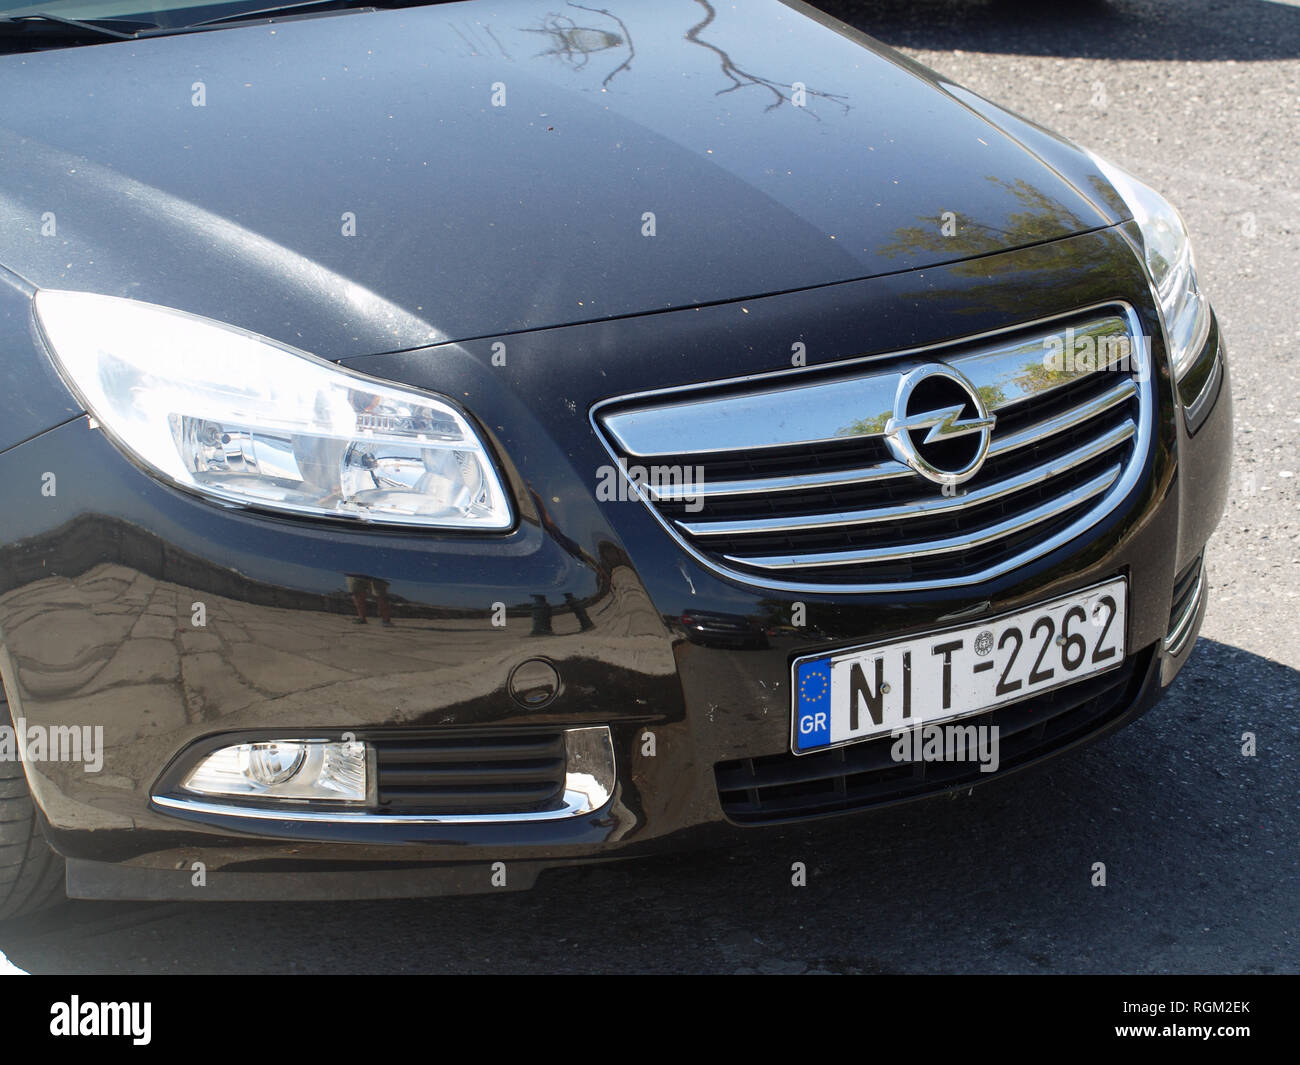 Black Opel Insignia in Corfu, Greece Stock Photo - Alamy